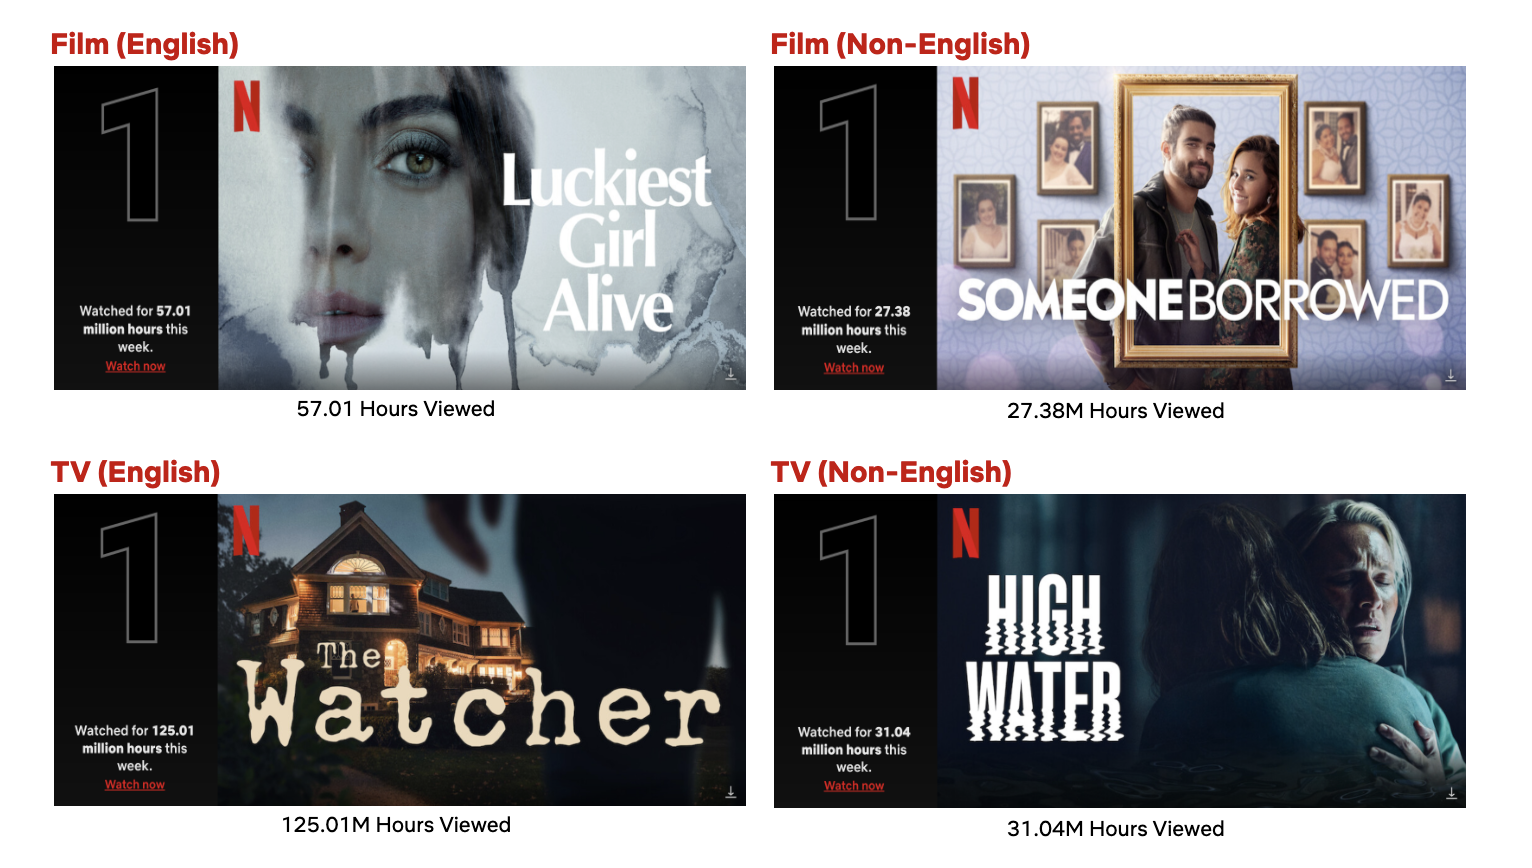 Netflix: lançamentos da semana (4 a 10 de outubro) - Olhar Digital